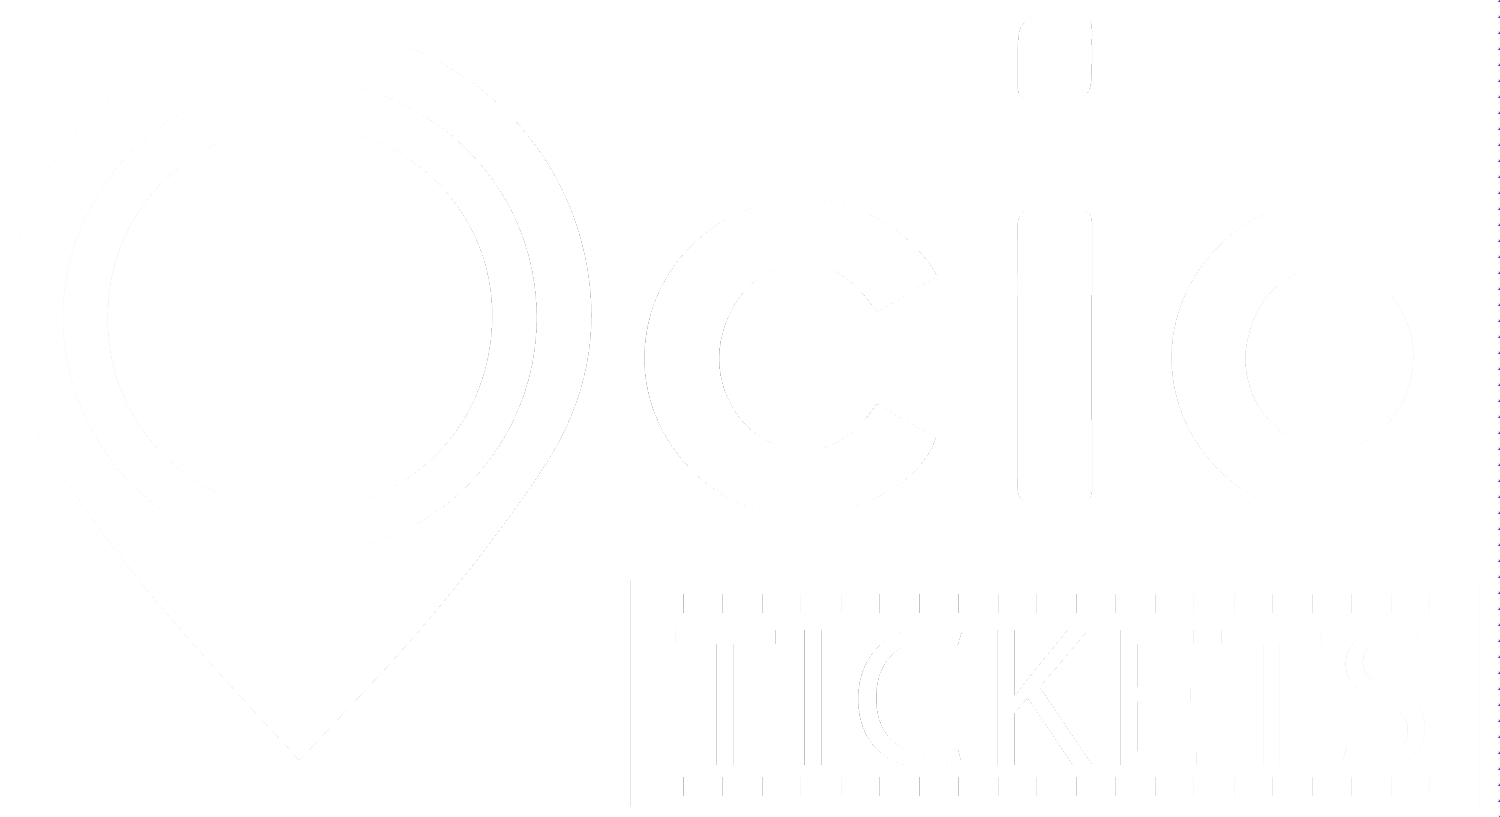 Ocio tickets